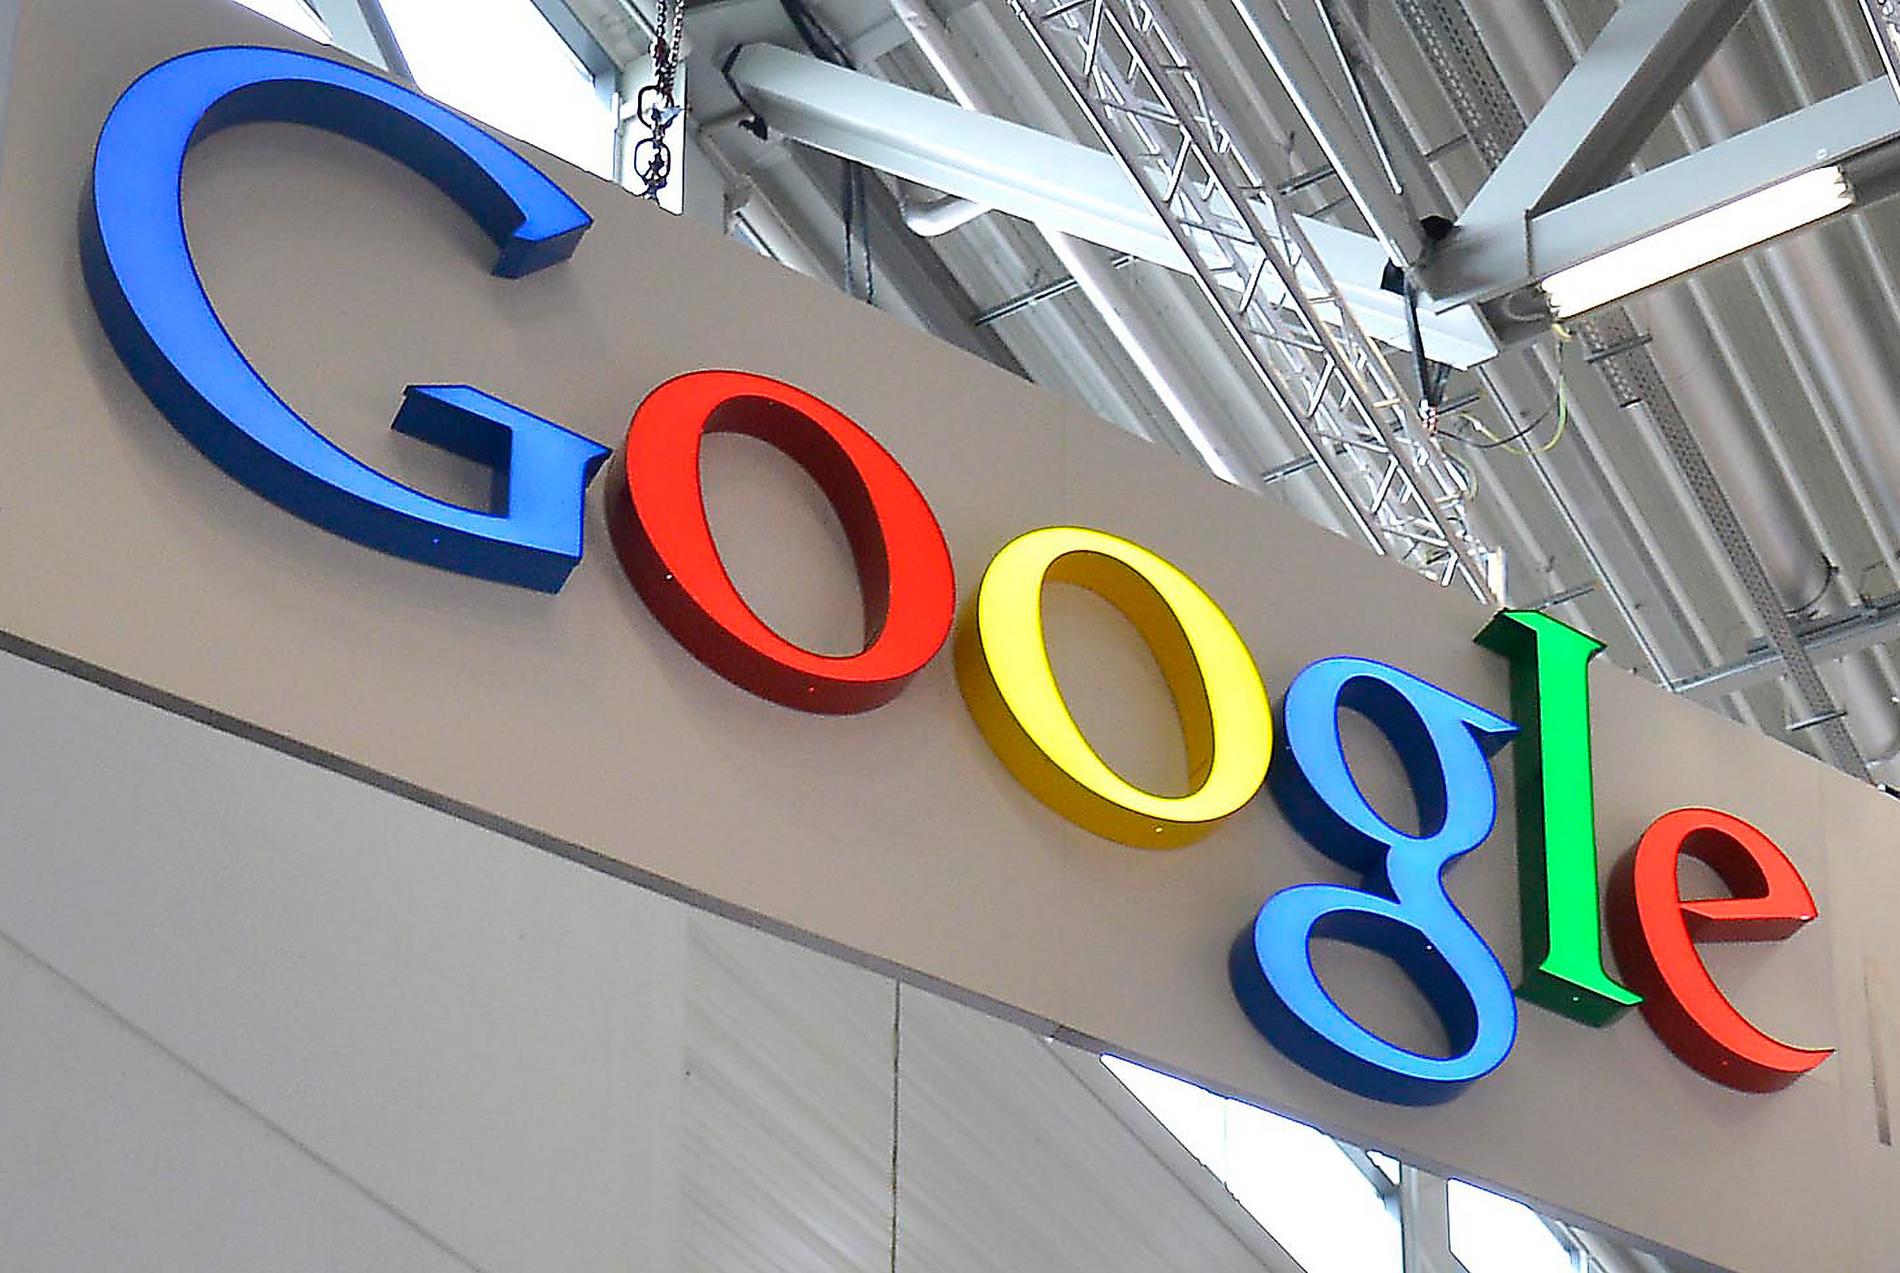 Google populäraste arbetsplatsen att jobba på.